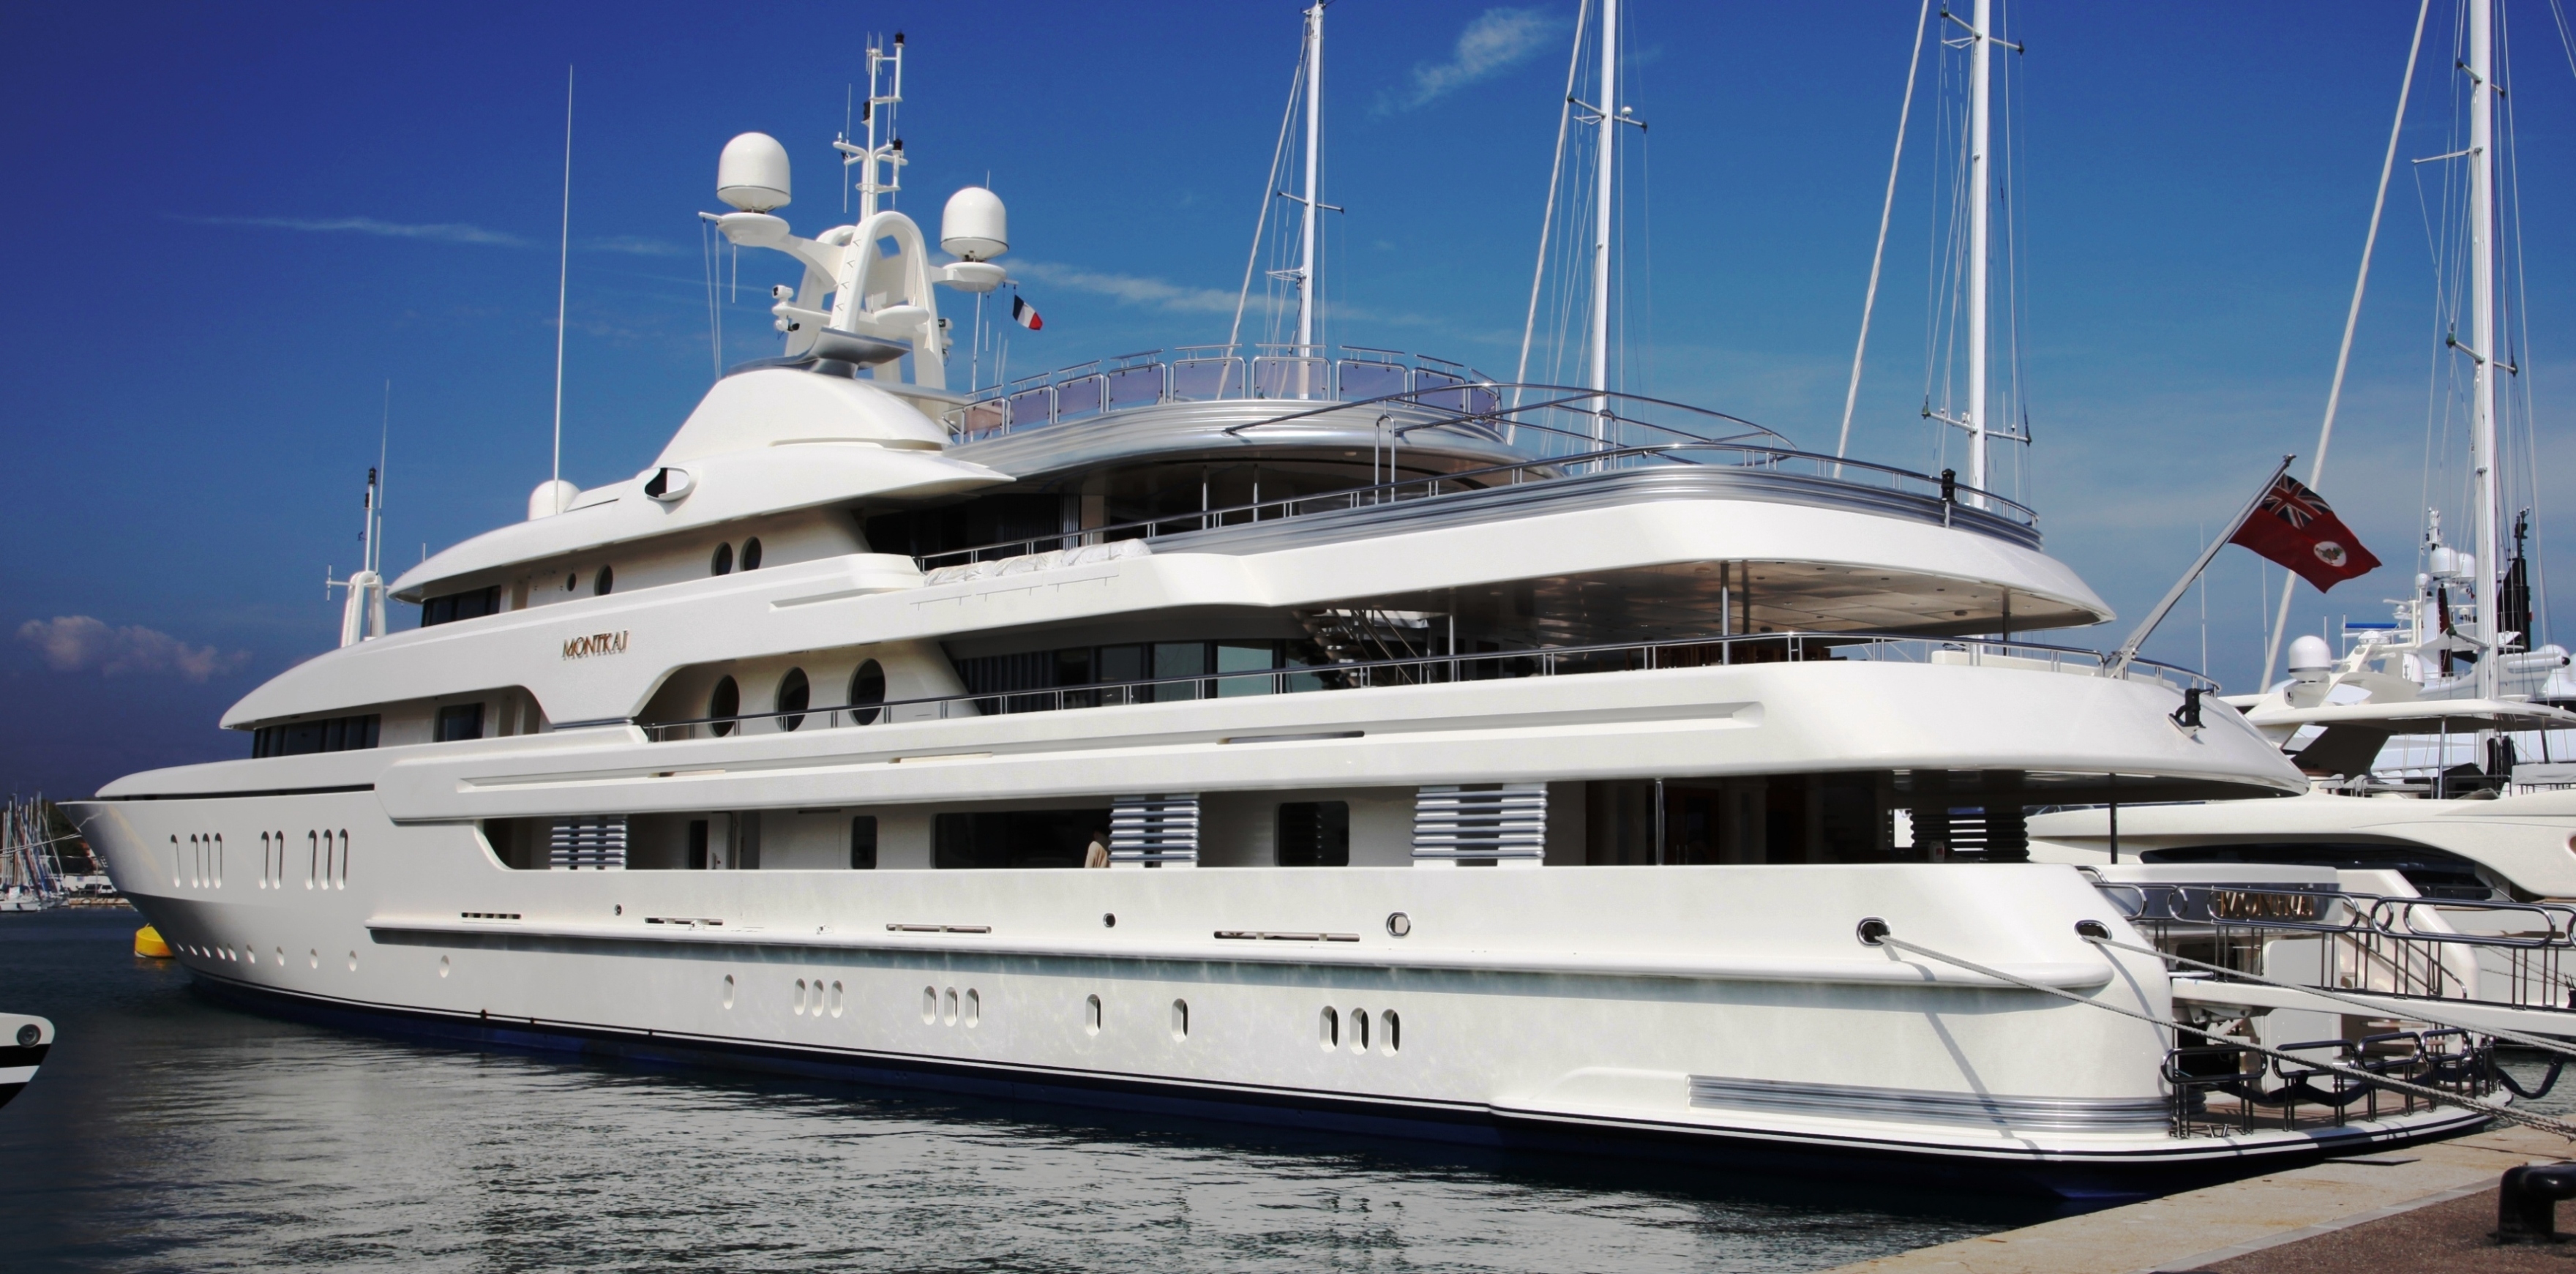 who owns montkaj yacht